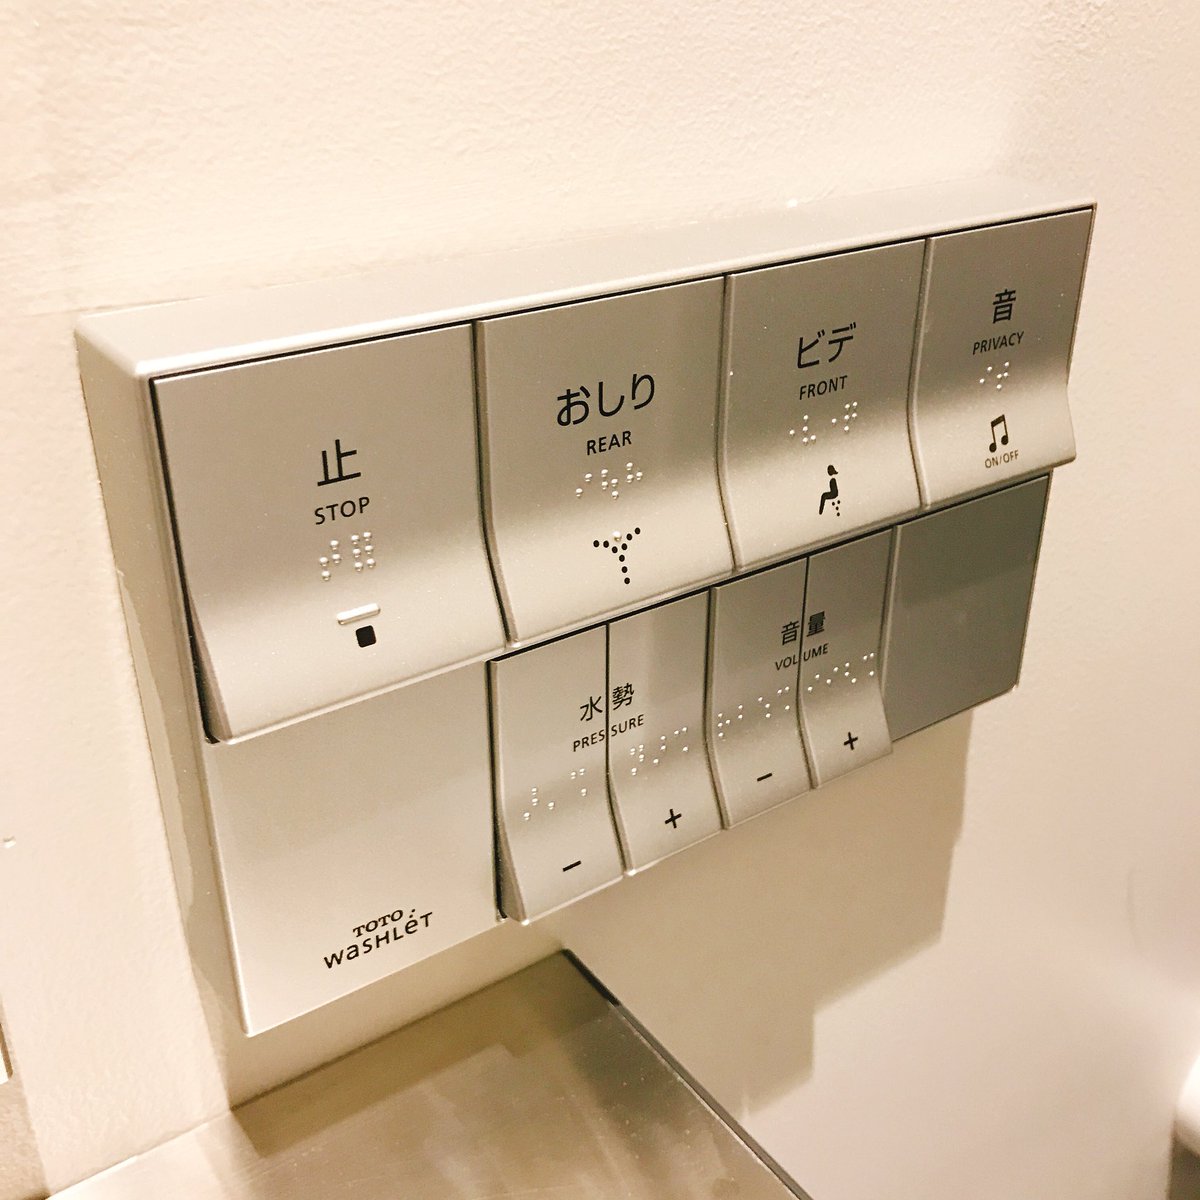 やけにボタンに出っ張りがあるトイレのリモコン 一体なぜ 驚きの機能が隠されていた Togetter